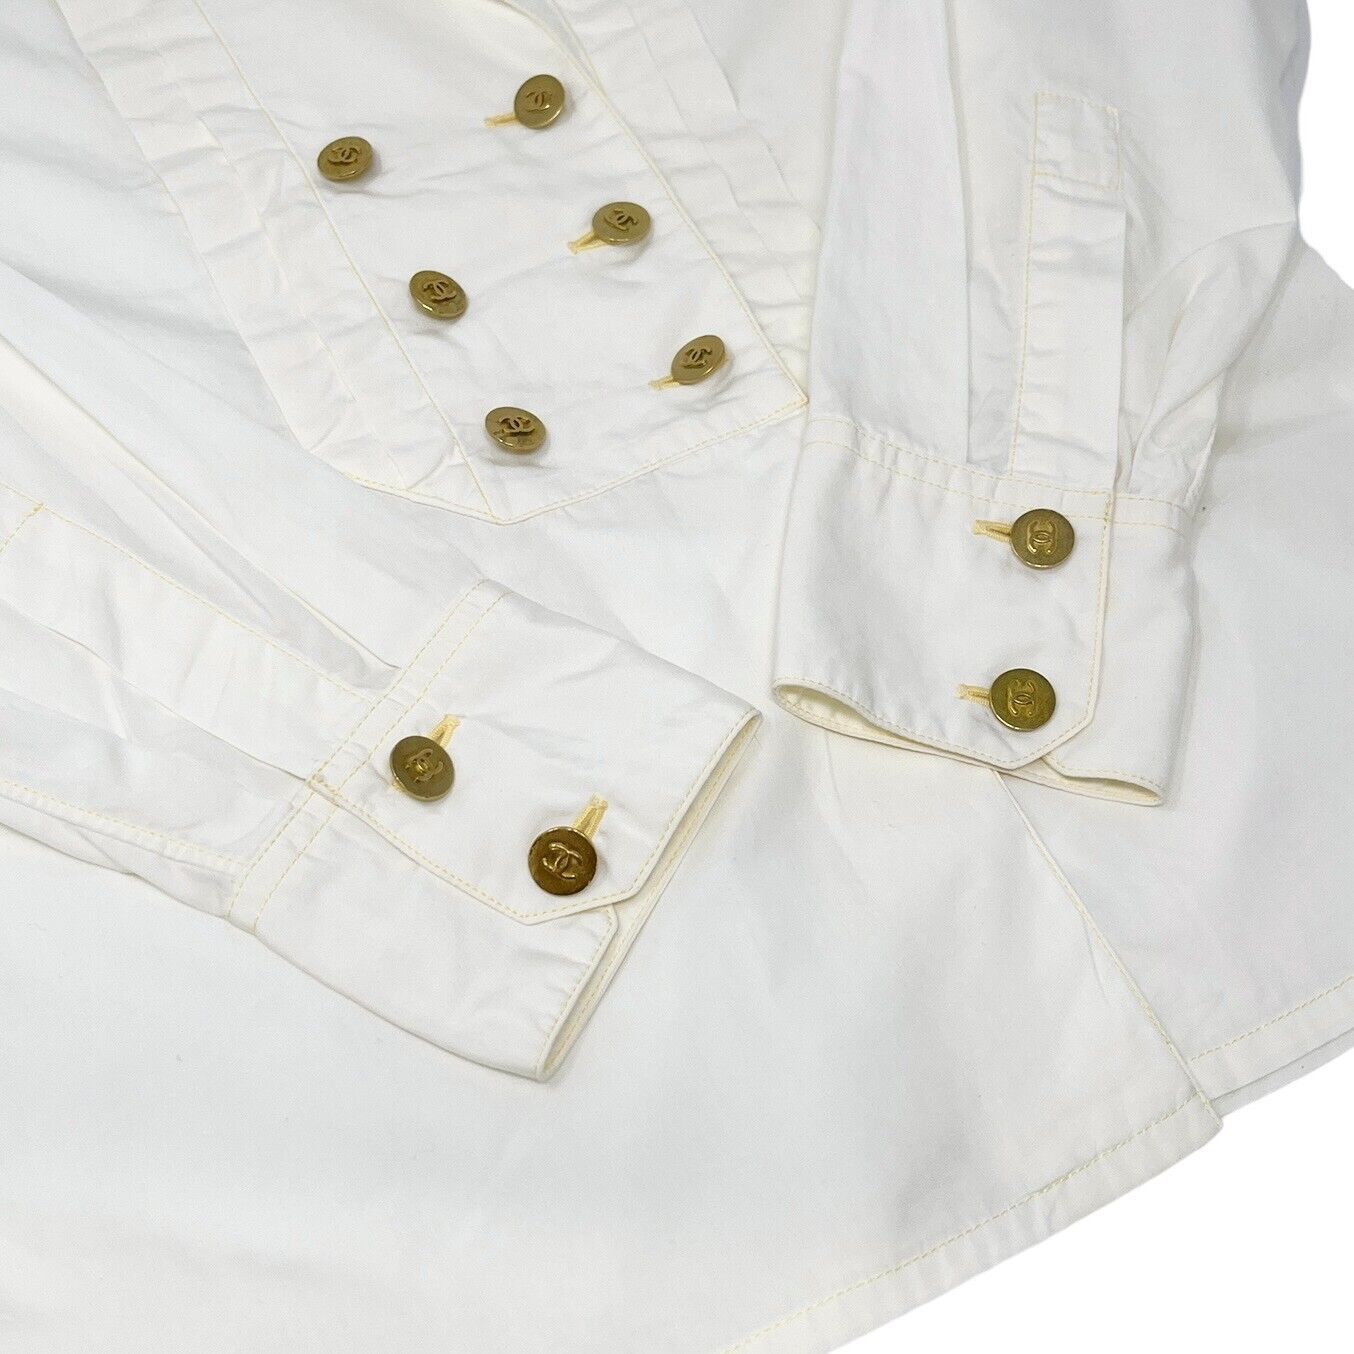 CHANEL Vintage CC Mark Logo Button Shirt Top Frill Cream Gold Cotton Rank AB